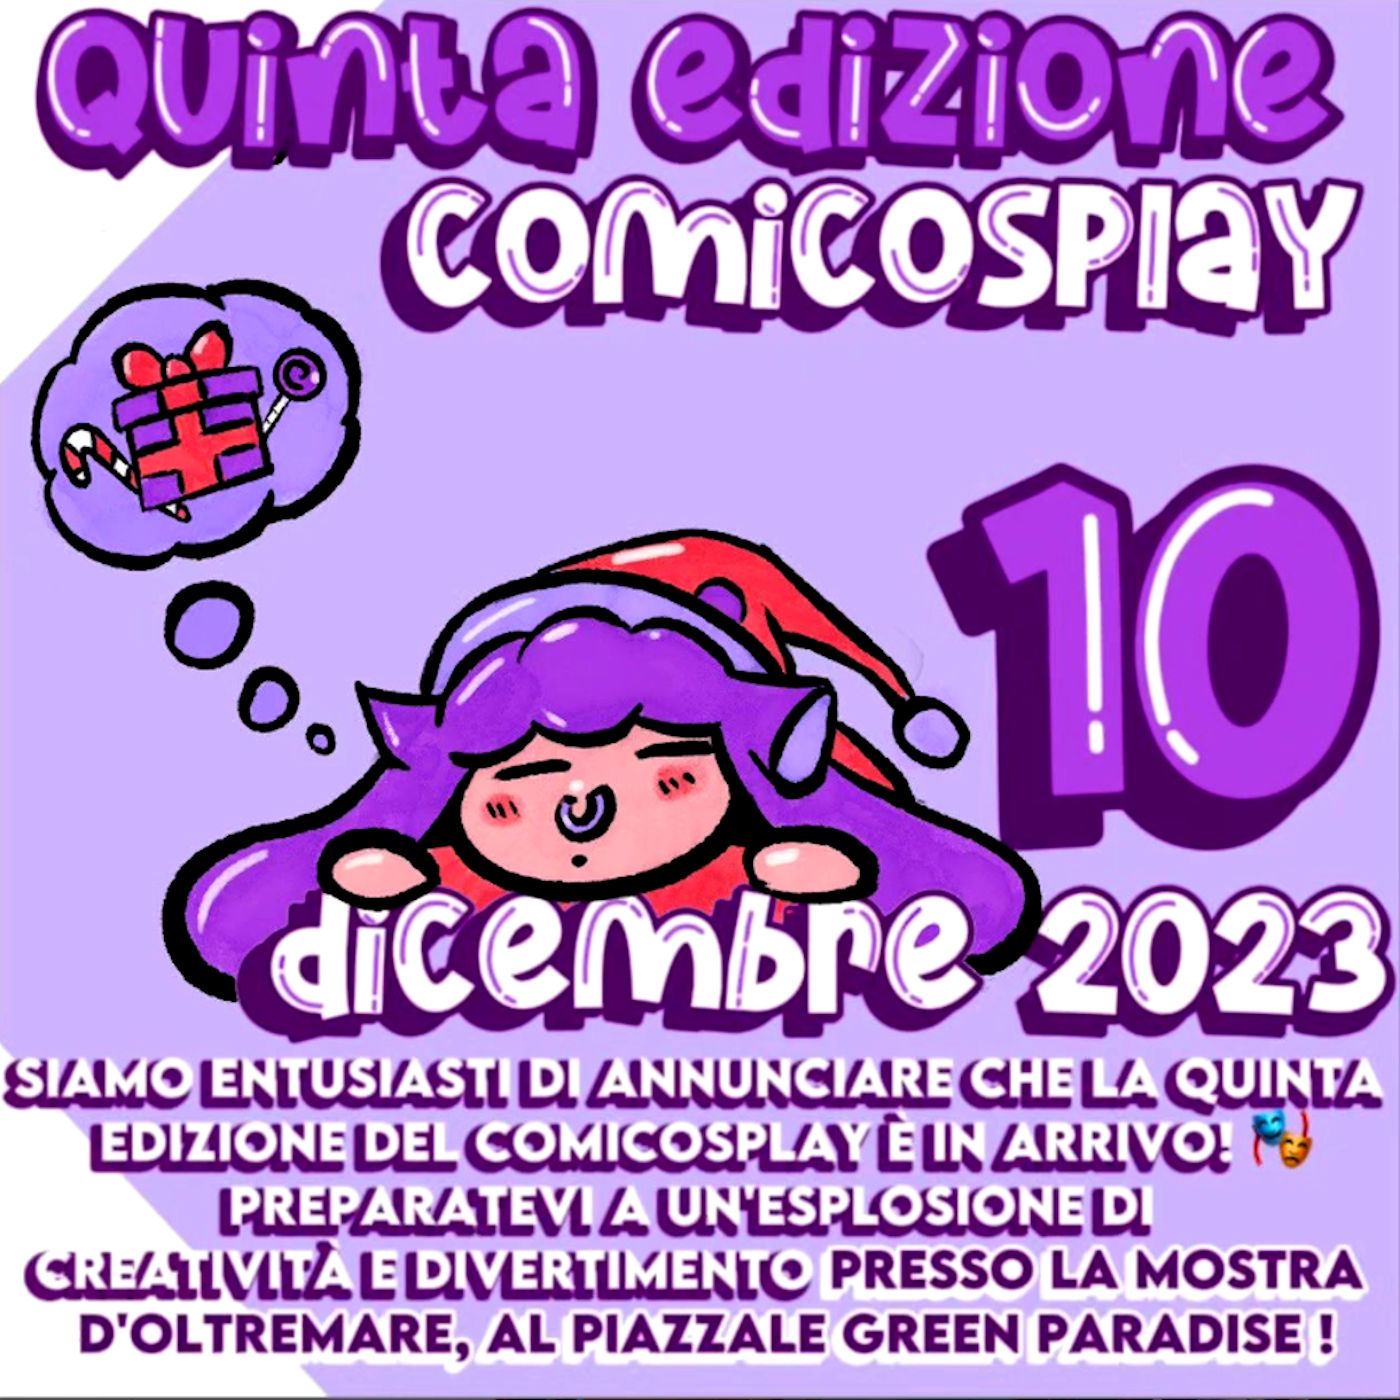 La quinta edizione del Comicosplay: 10 dicembre 2023